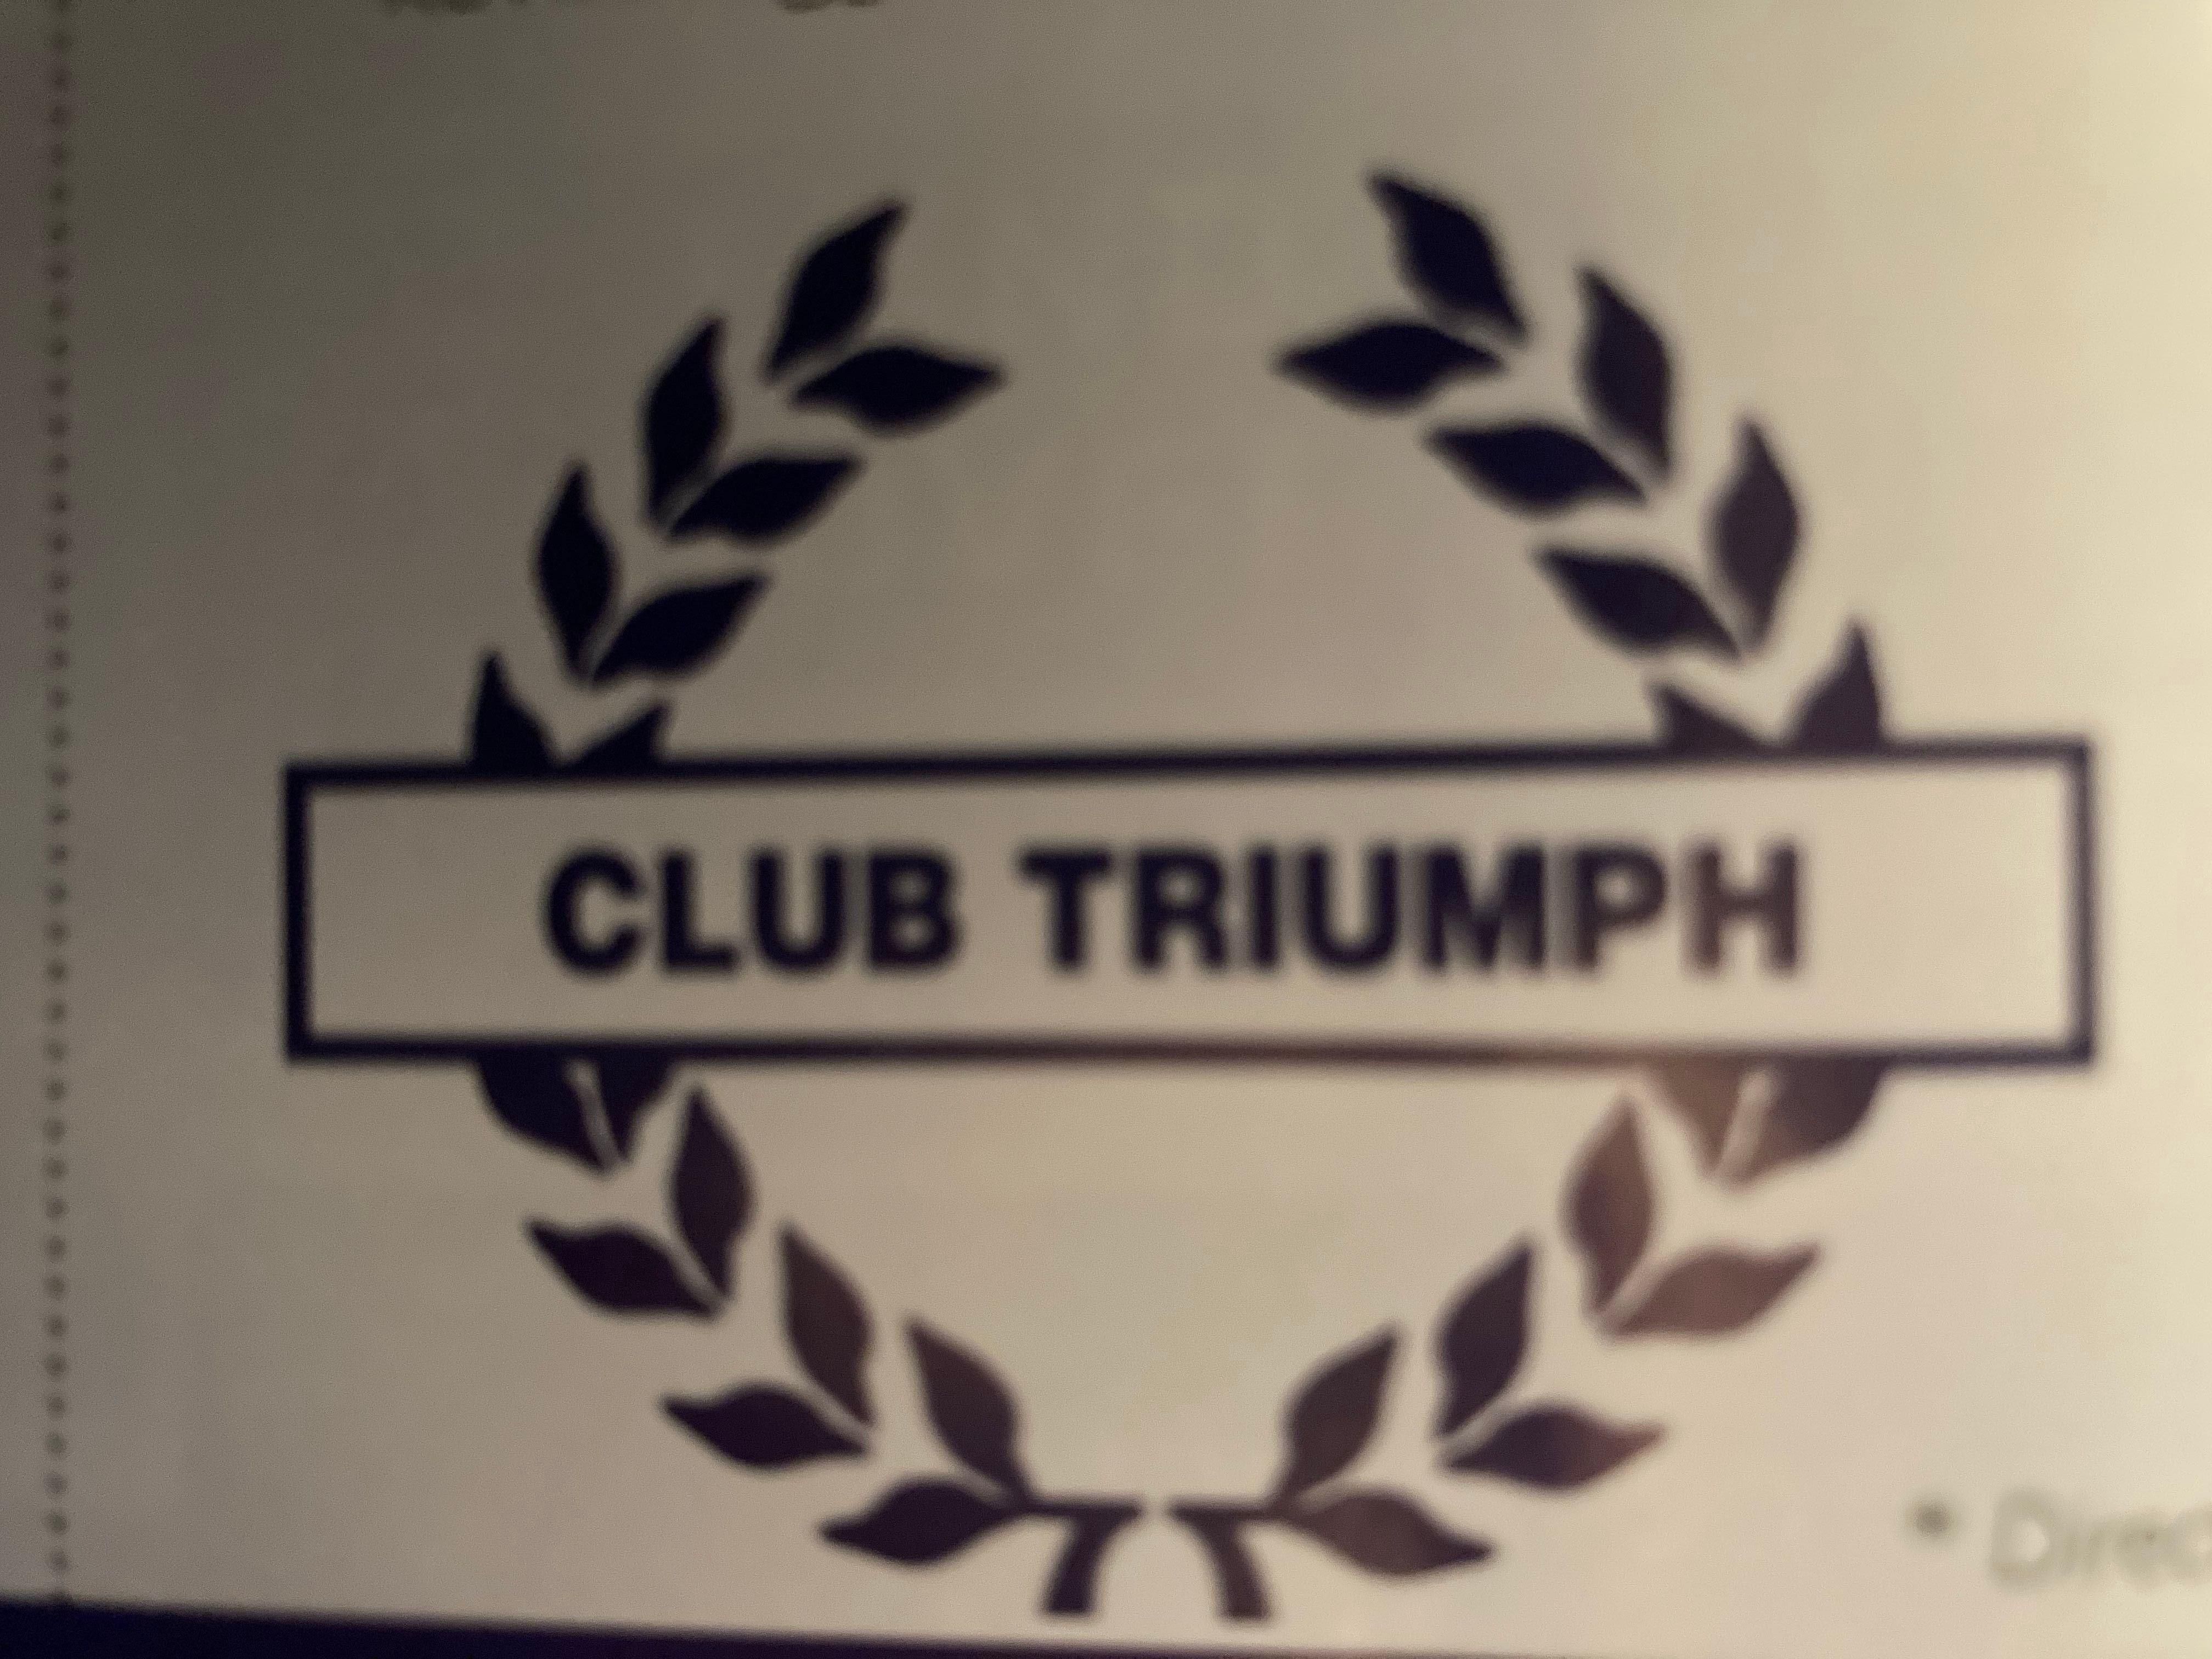 Club Triumph